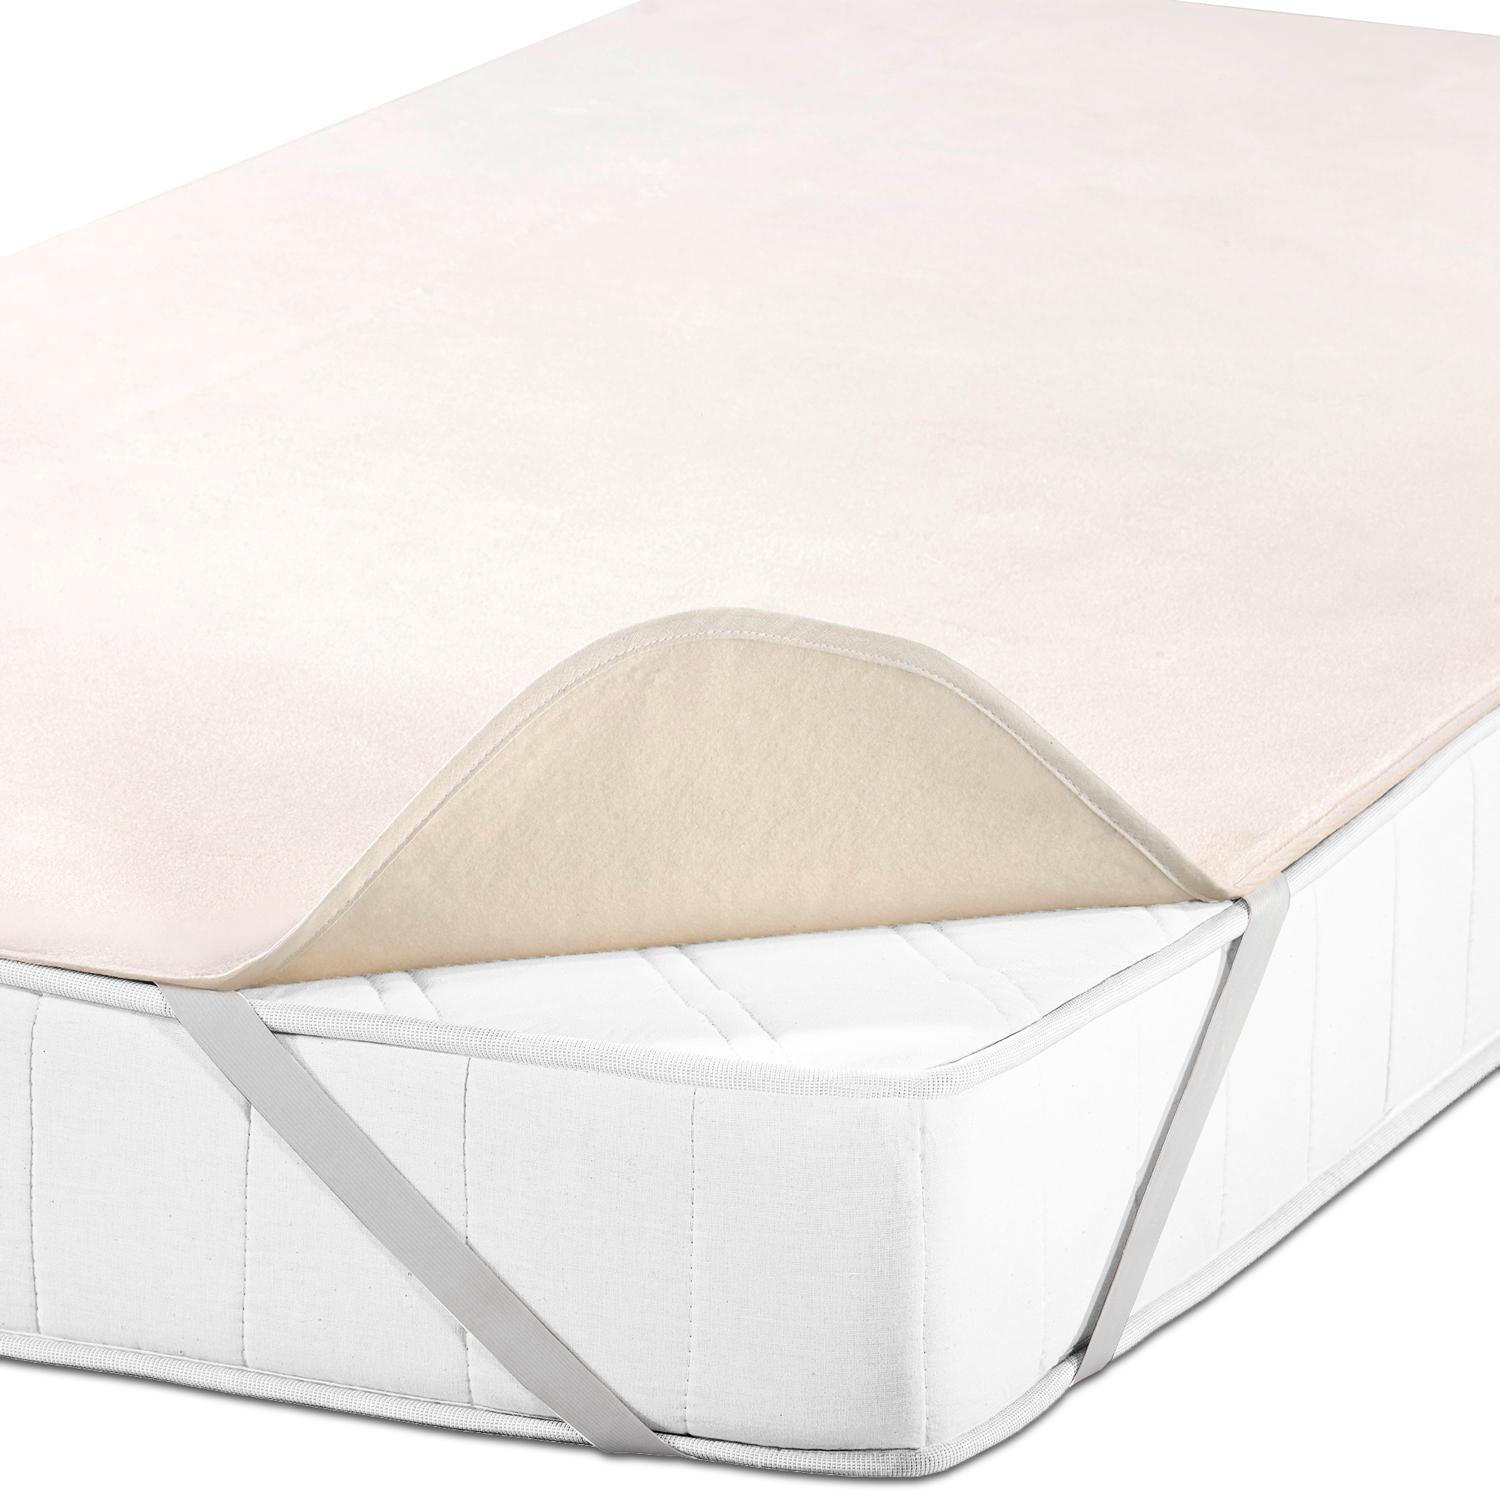 Sleezzz Basic Molton yatak koruyucu 90 x 190 cm, %100 pamuktan yapılmış yatak koruyucu, doğal renkler, sabit gerginlik